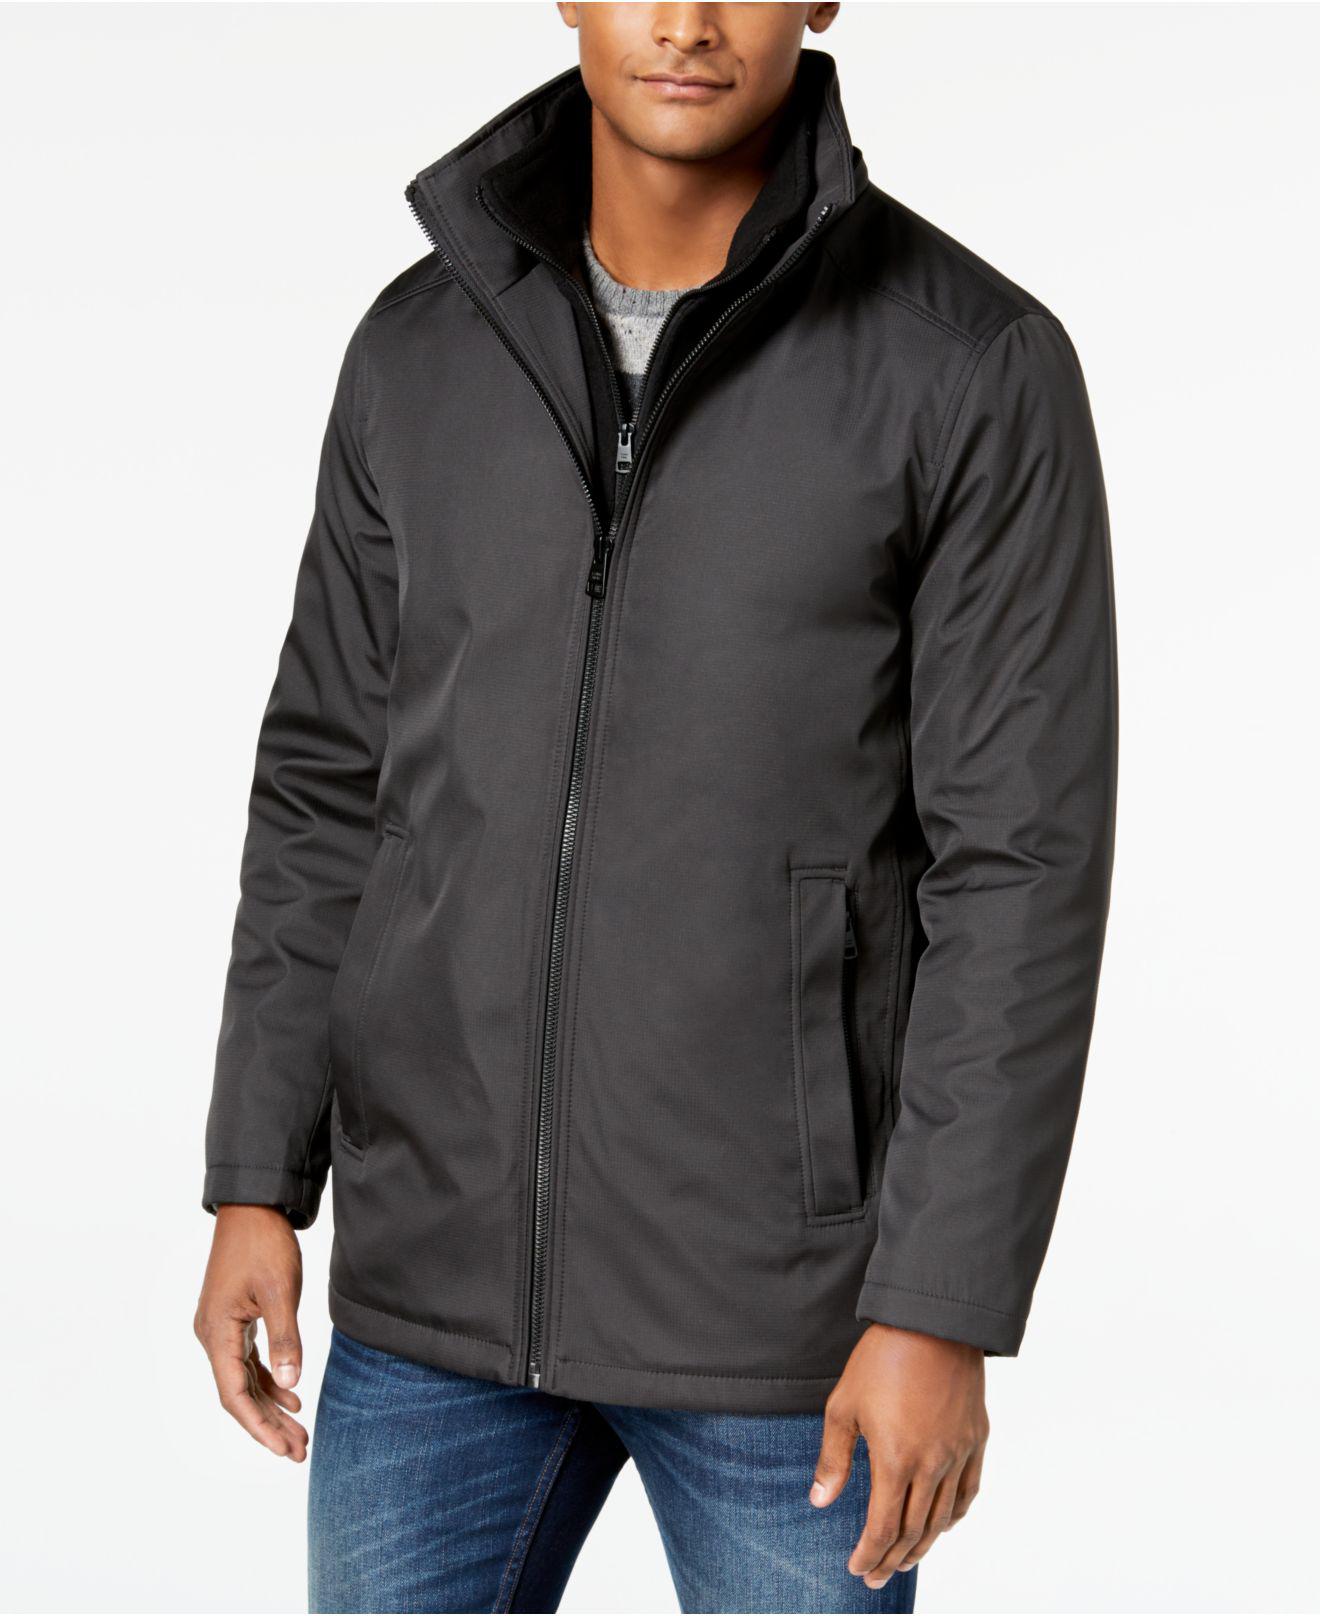 Calvin Klein Ripstop Full-zip Jacket With Fleece Bib in Gray for Men - Lyst